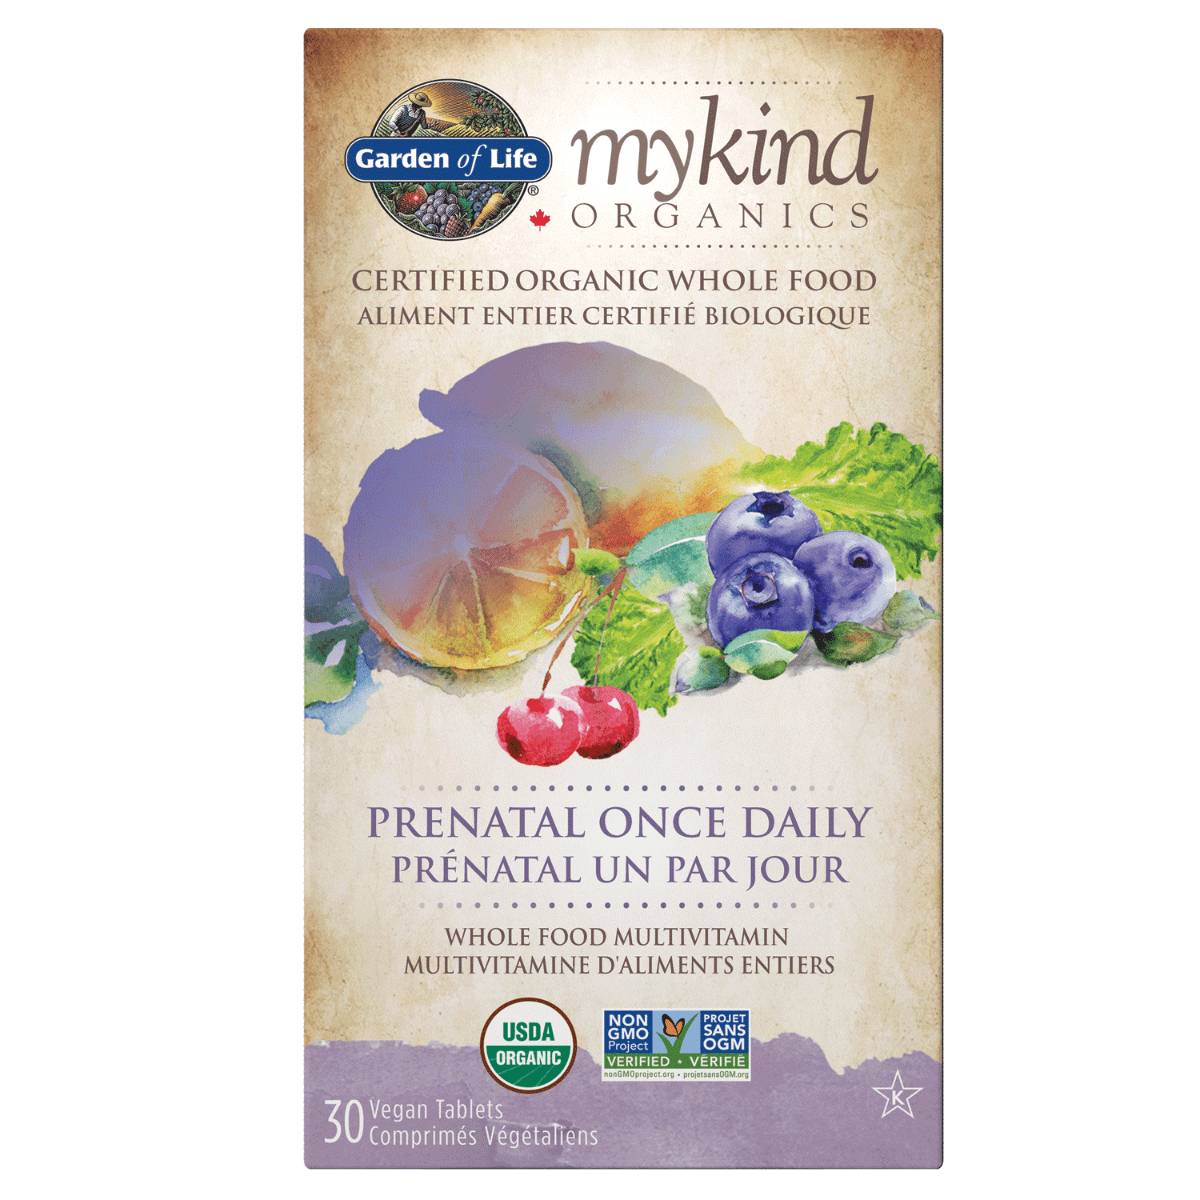 Garden of Life mykind Organics Multivitamin Prenatal 30t